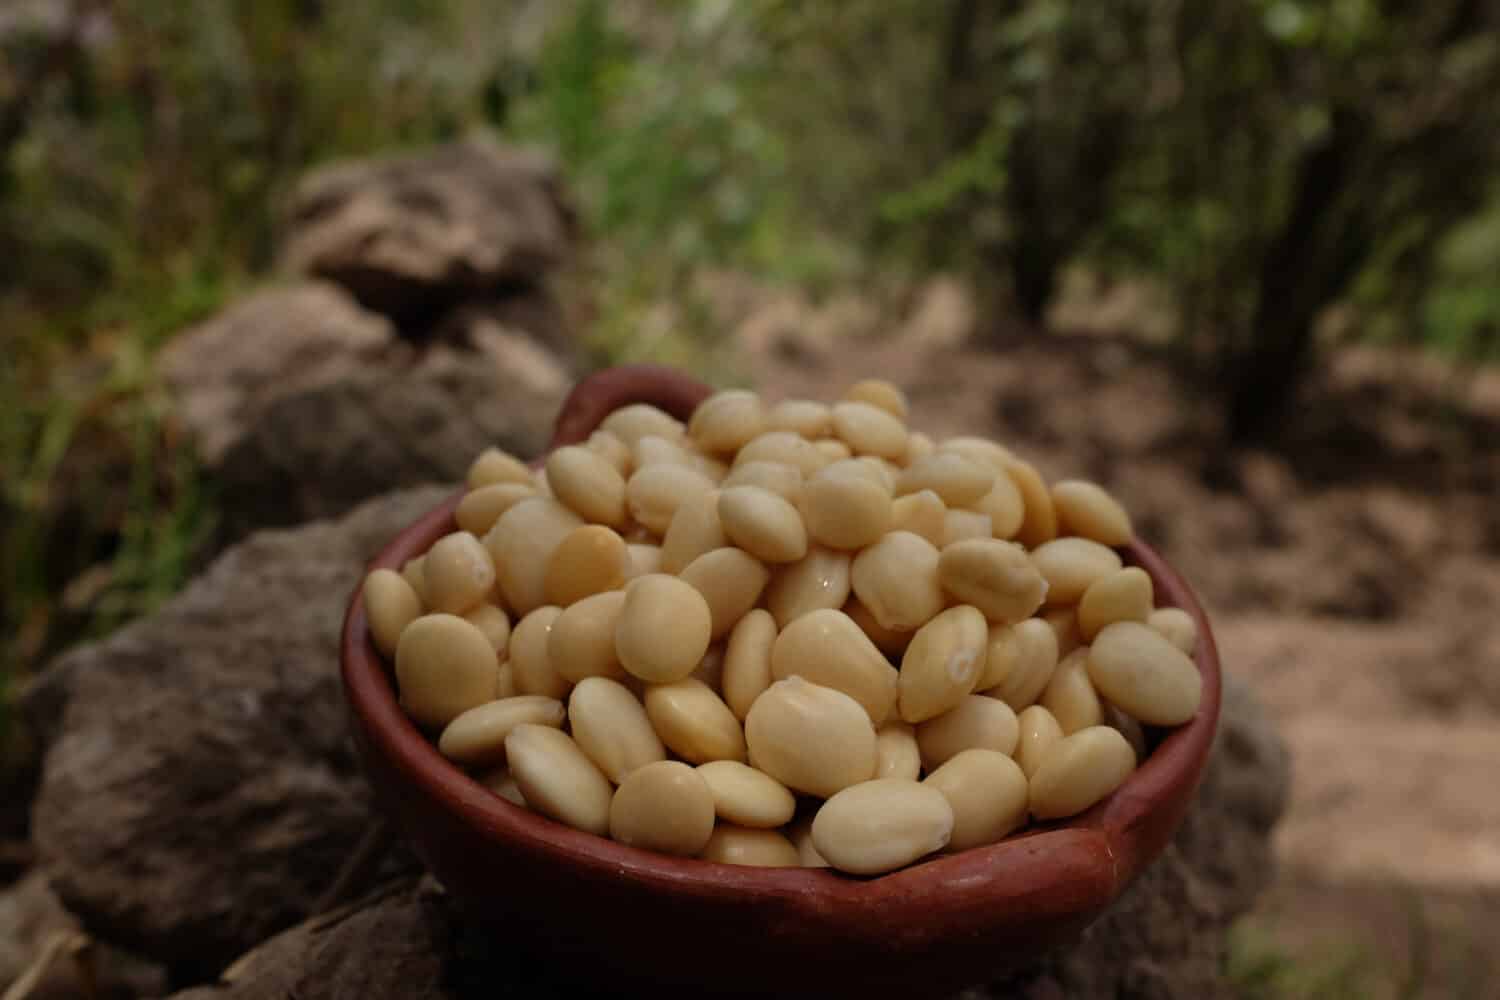 Lupino, chocho, lupino o tarwi, il tarwi è un legume.  Il suo alto contenuto proteico, simile a quello della soia, la rende una pianta di interesse per l'alimentazione umana.